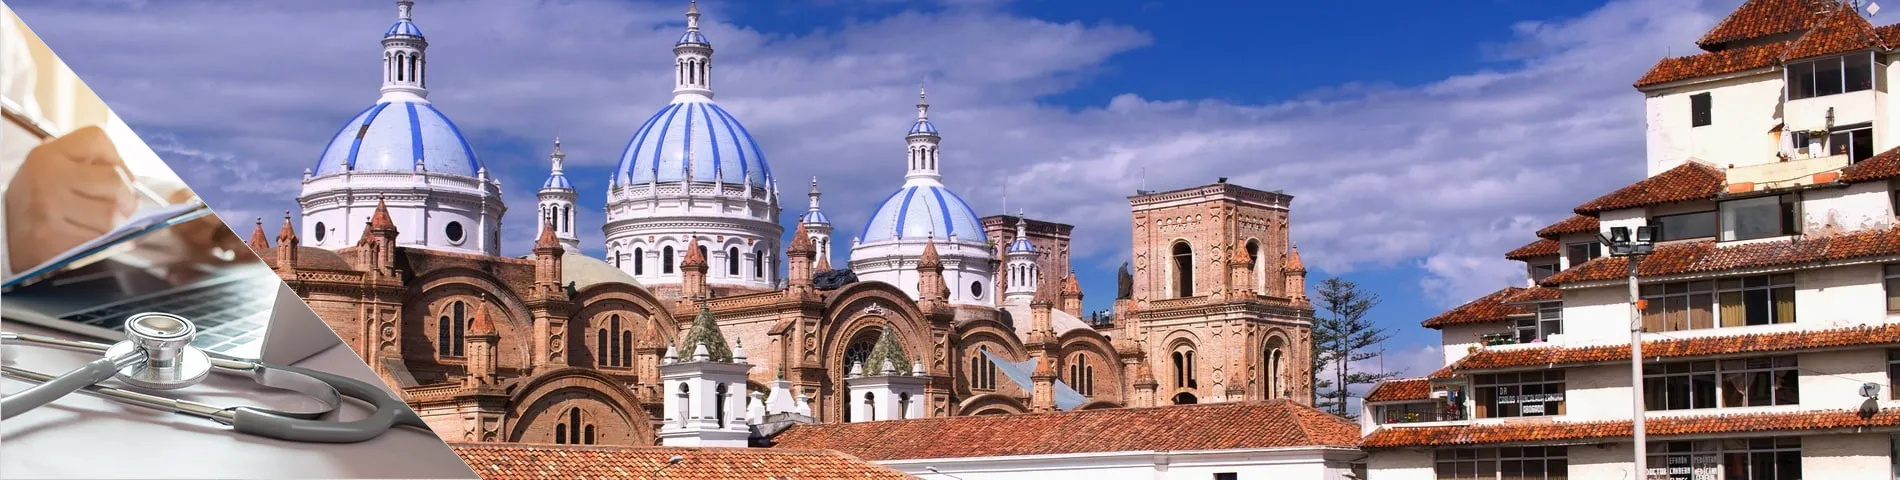 Cuenca - Hiszpański dla Lekarzy i Pielęgniarek 